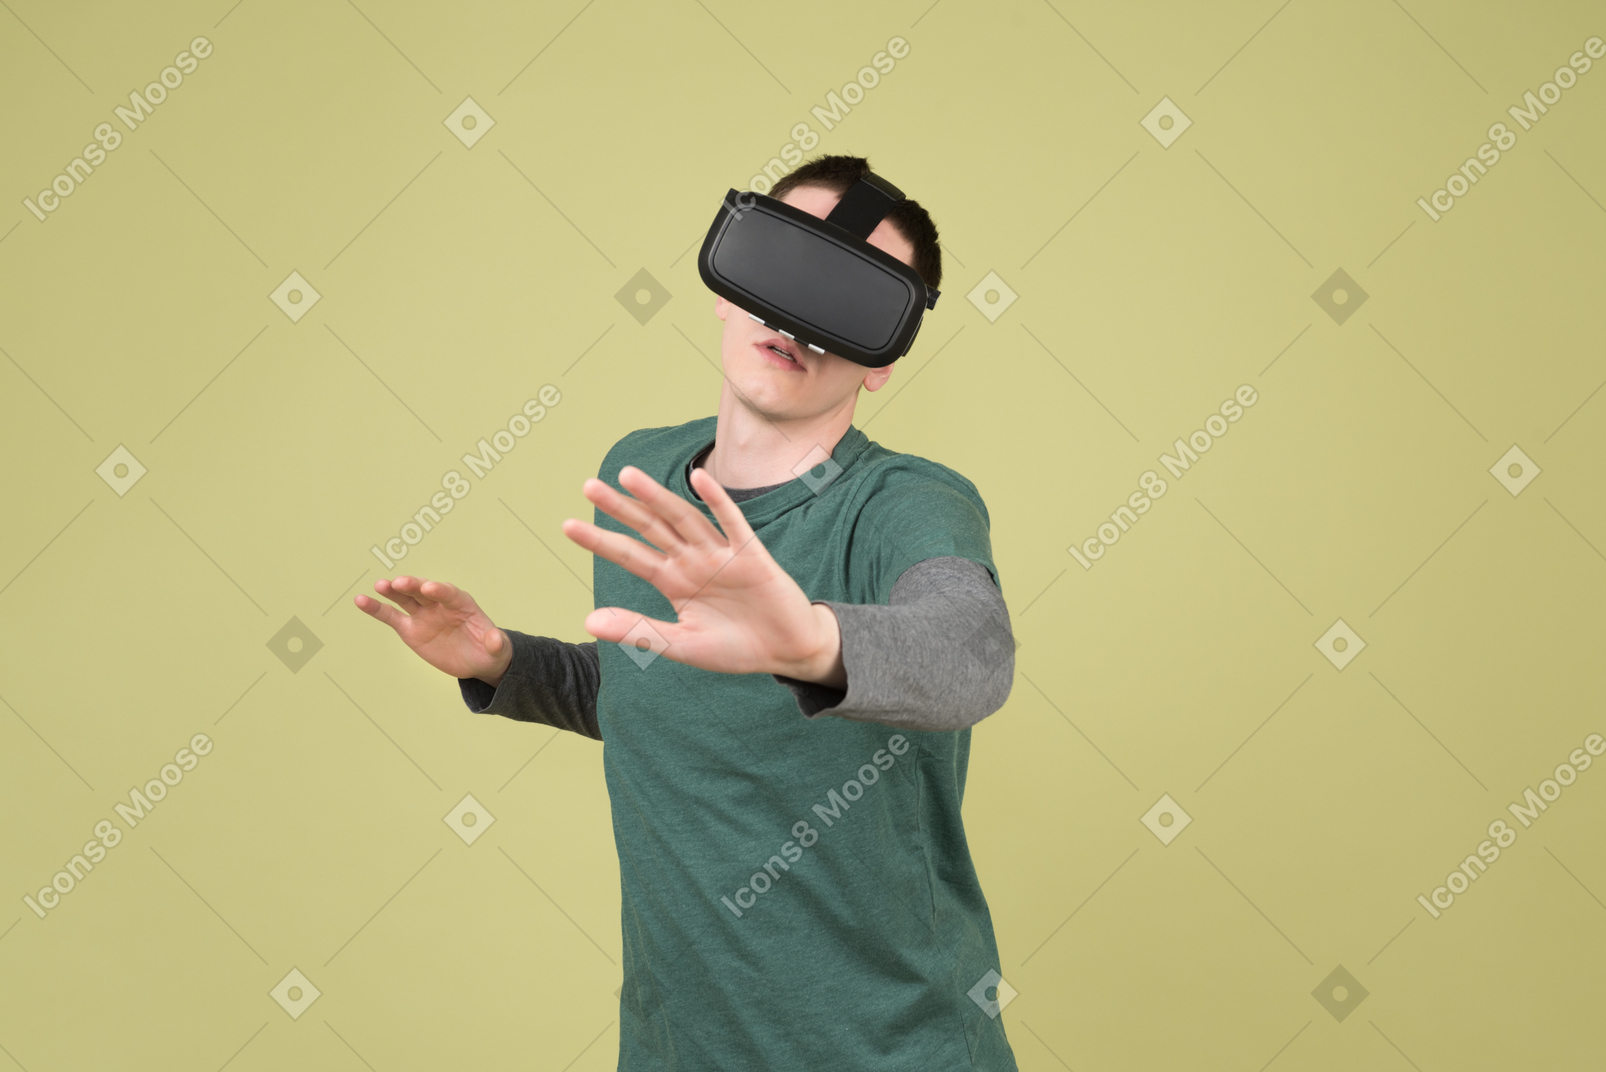 Mann erlebt virtuelle realität mithilfe eines headsets